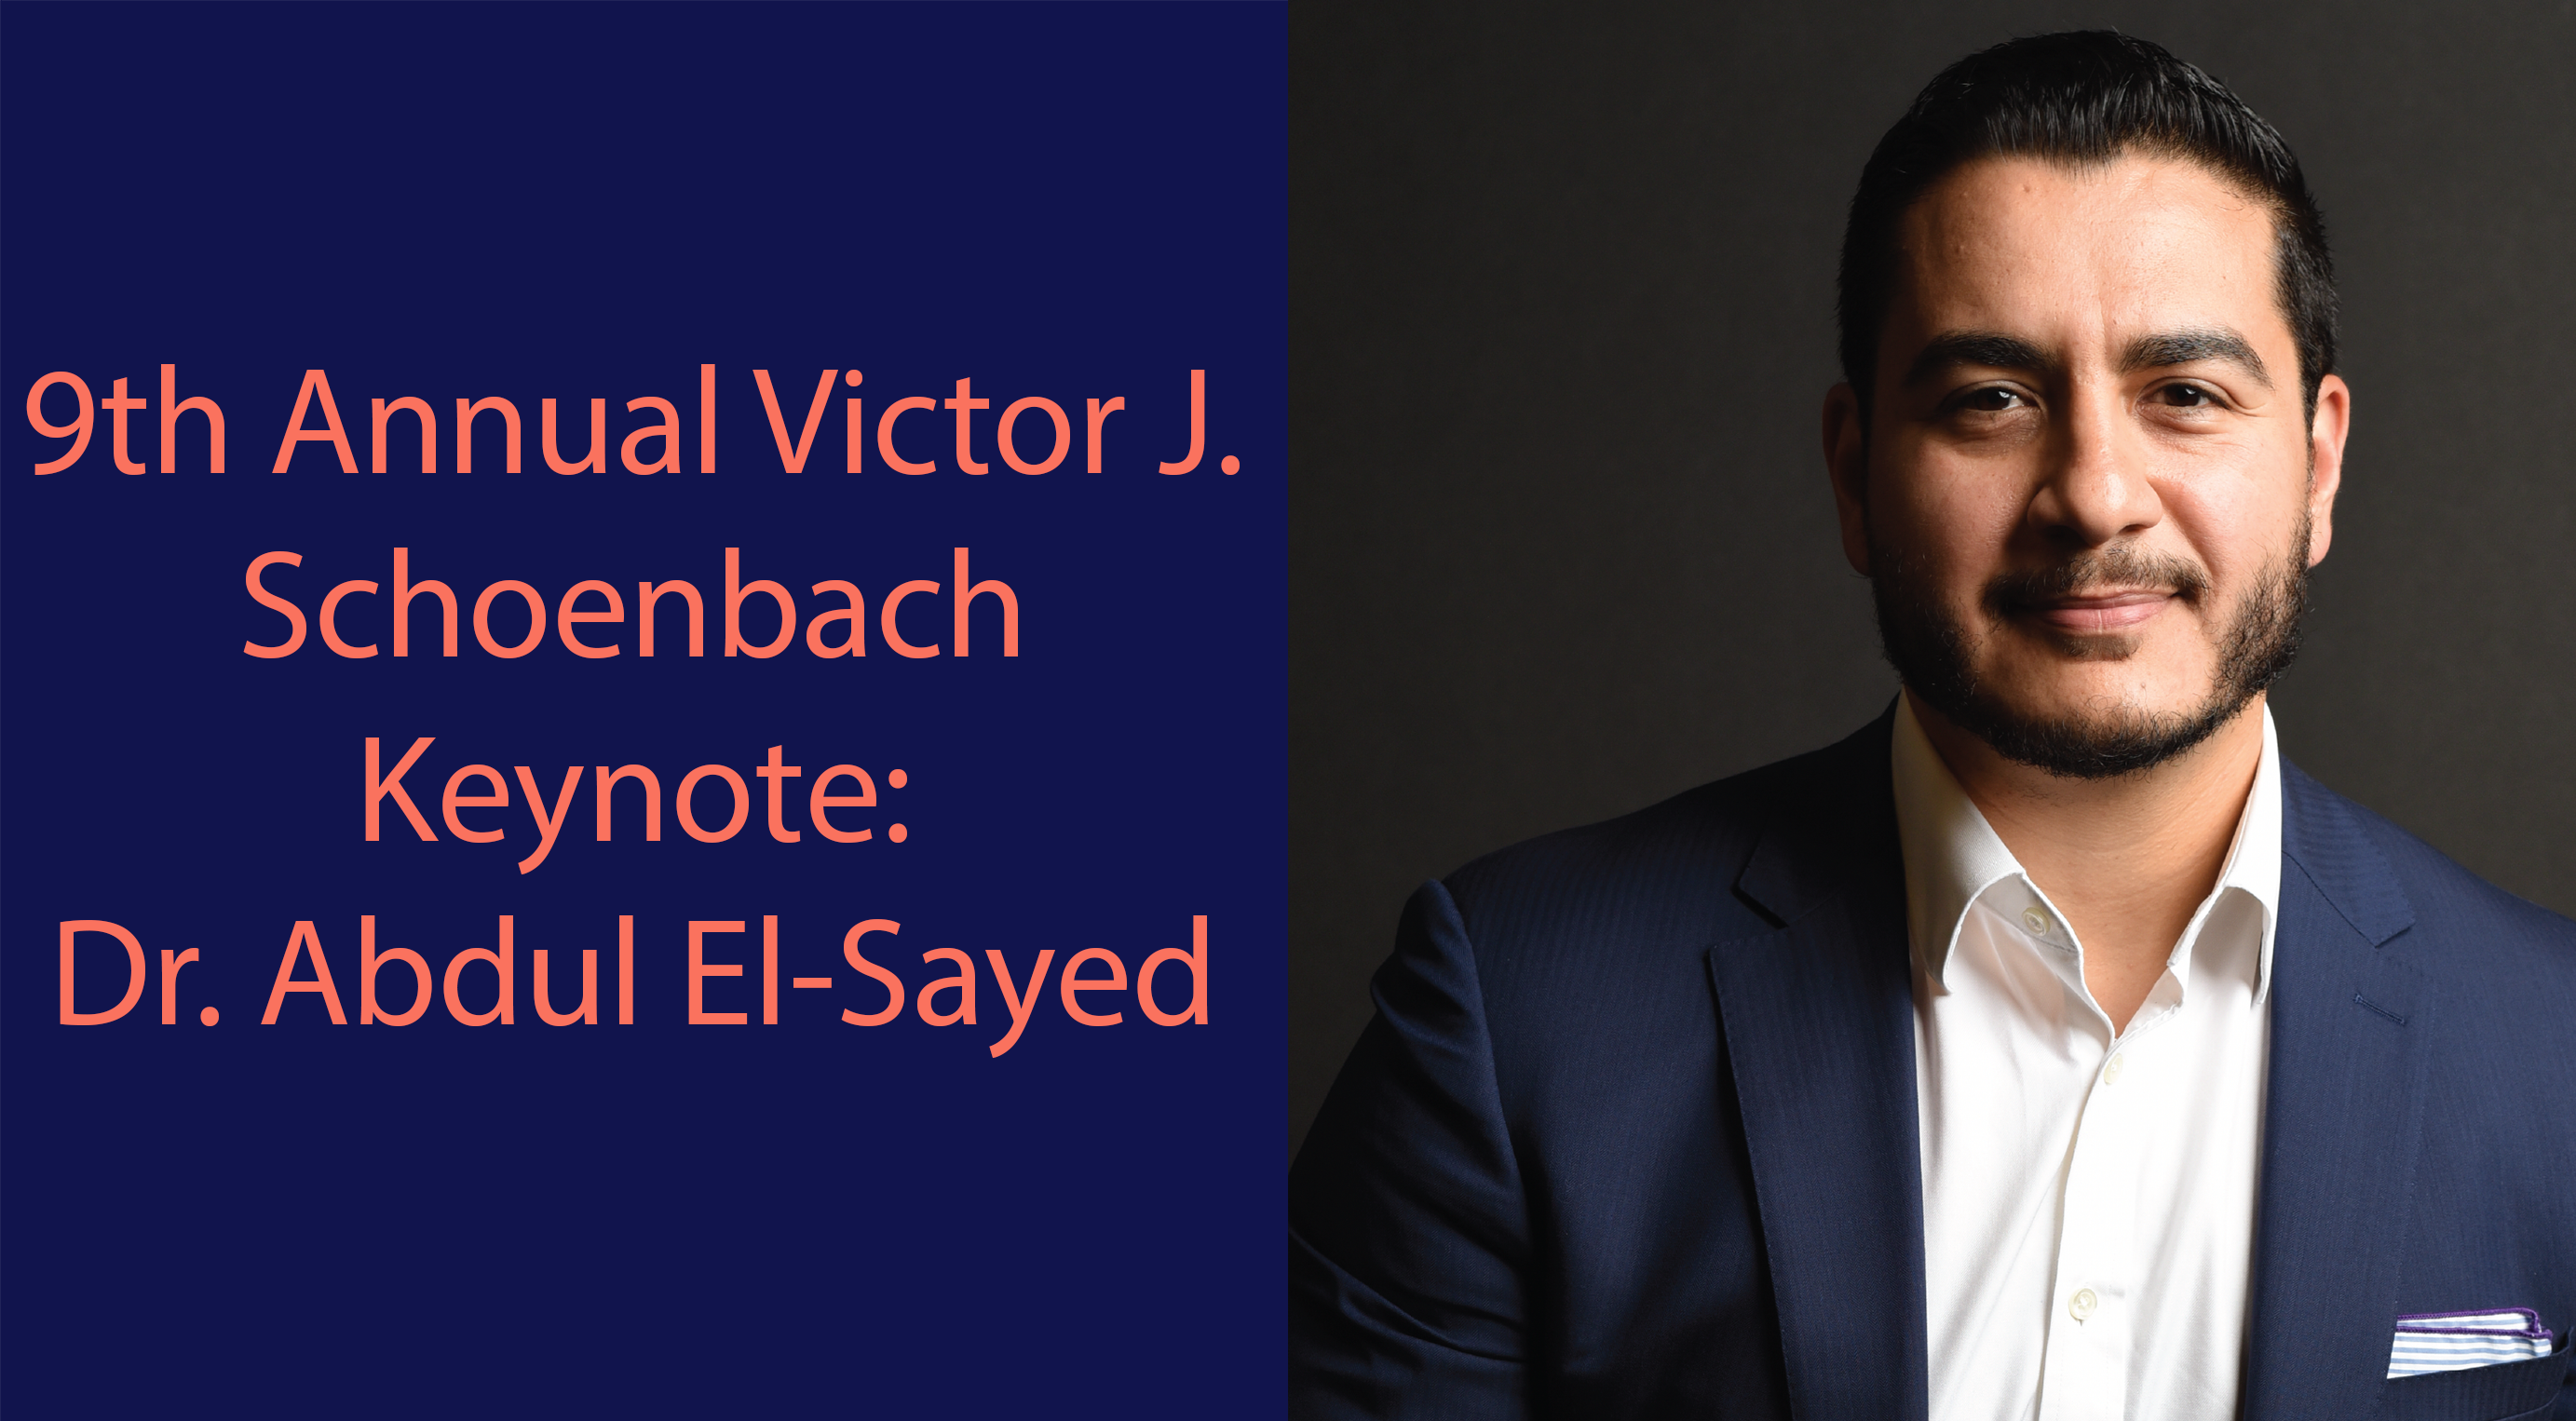 9th Annual Victor J. Schoenbach Keynote: Dr. Abdul El-Sayed